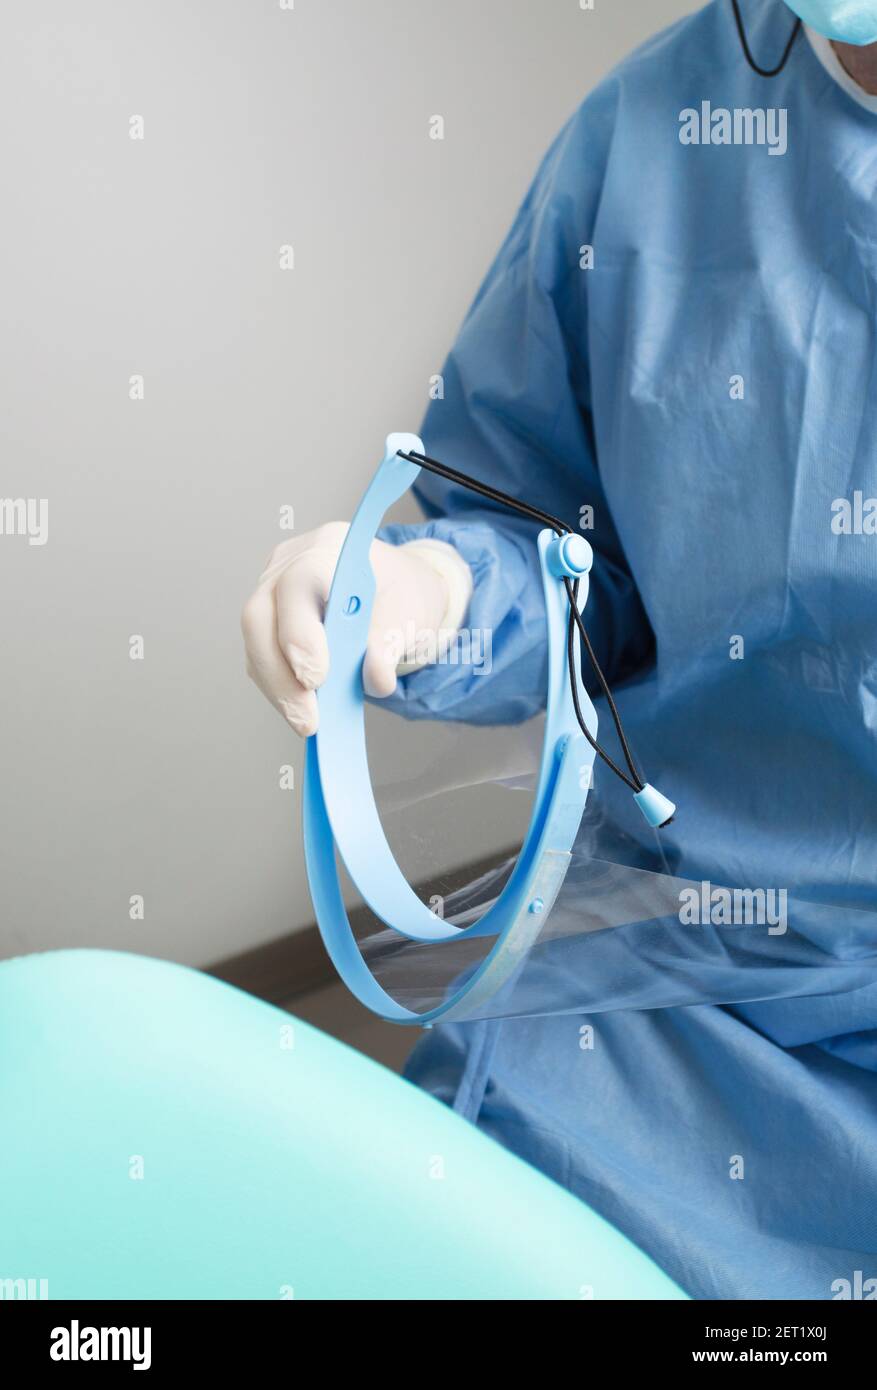 Zahnarzt mit Gesichtsschutz in den Händen, mit Patientenstuhl,  detaillierter Plan Stockfotografie - Alamy